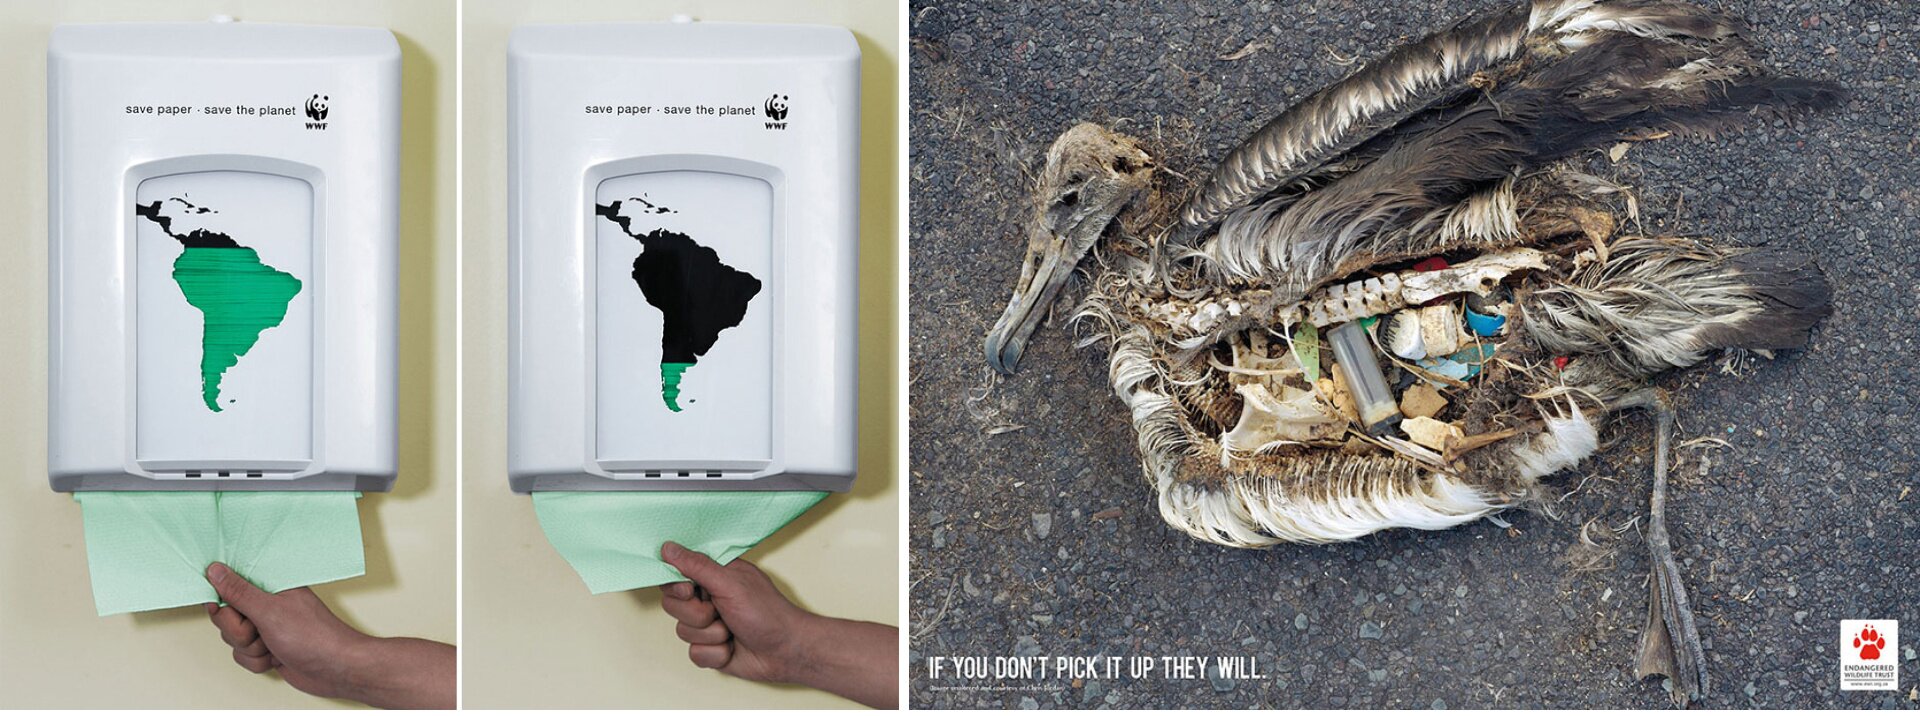 Reklama społeczna WWF, „Safe paper, safe the planet”, Reklama zwracająca uwagę na zanieczyszczenie środowiska: „If You Don’t Pick It Up They Will”. Składa się z trzech obrazków. Na pierwszycg dwóch przedstawiony jest pojemnik na papier. Na pojemniku narysowana jest Ameryka Południowa, na pierwszym obrazku w kolorze zielonym, na drugim obrazku w kolorze czarnym - tylko południowa niewielka część kontynentu jest zielona. Trzeci obrazek przedstawia uschnięte ciało kaczki, która w swoich wnętrznościach ma zapalniczkę, plastikowe korki od butelek.